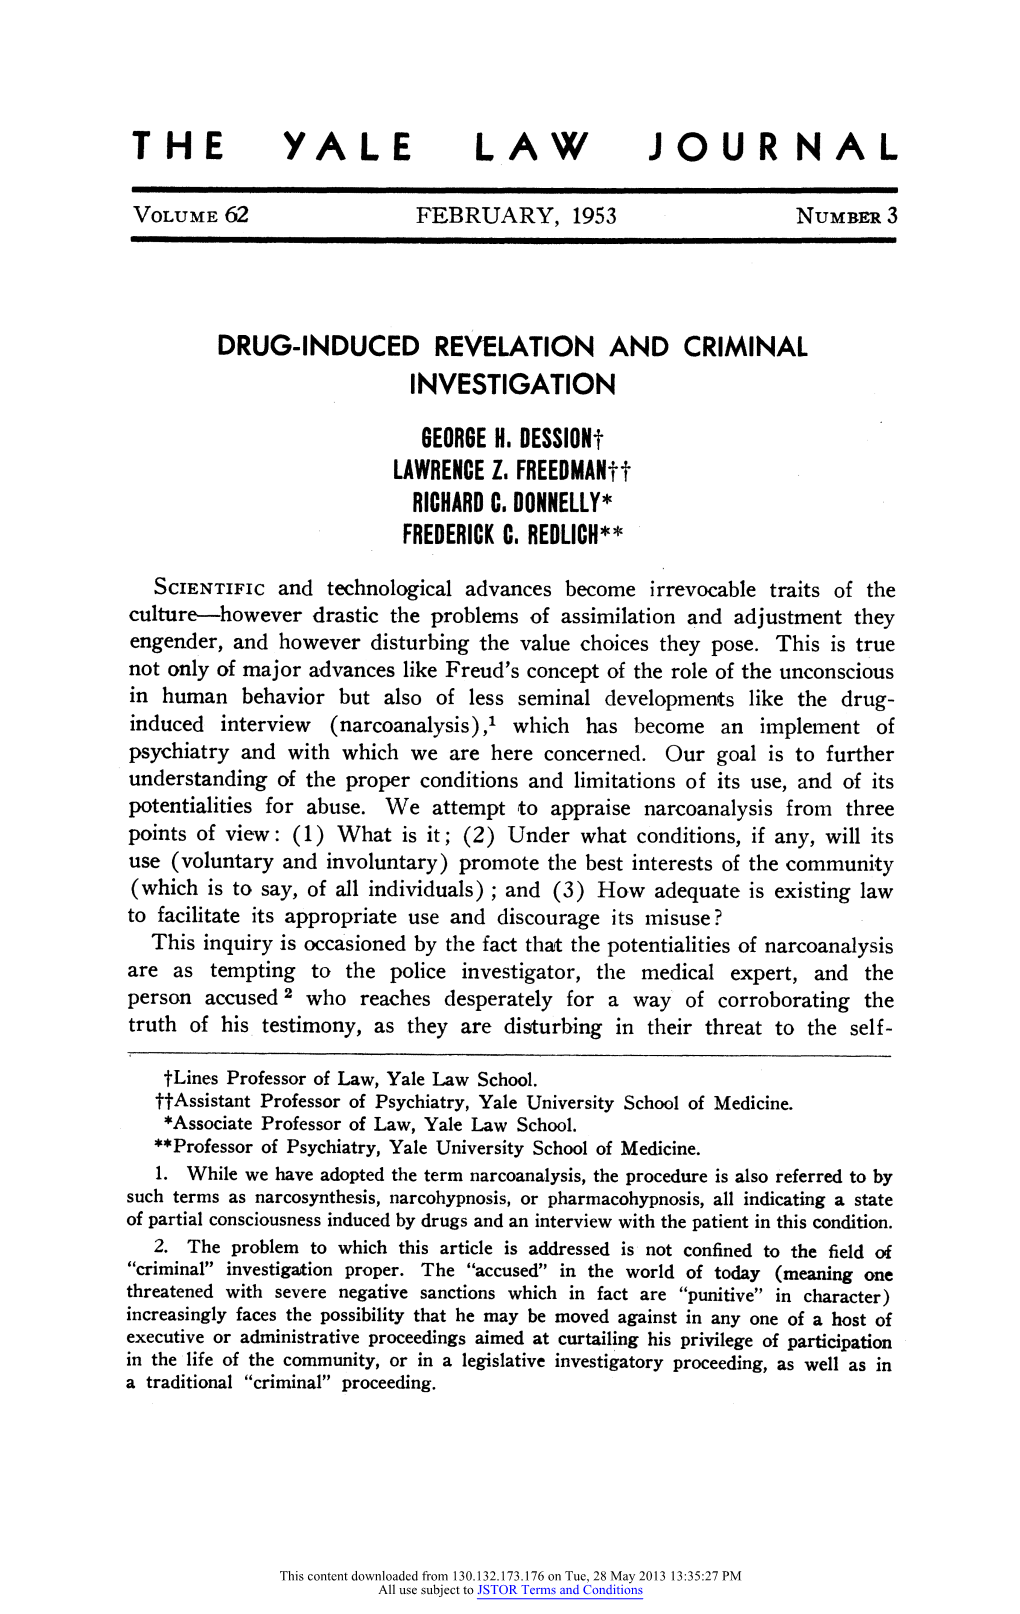 Drug-Induced Revelation and Criminal Investigation